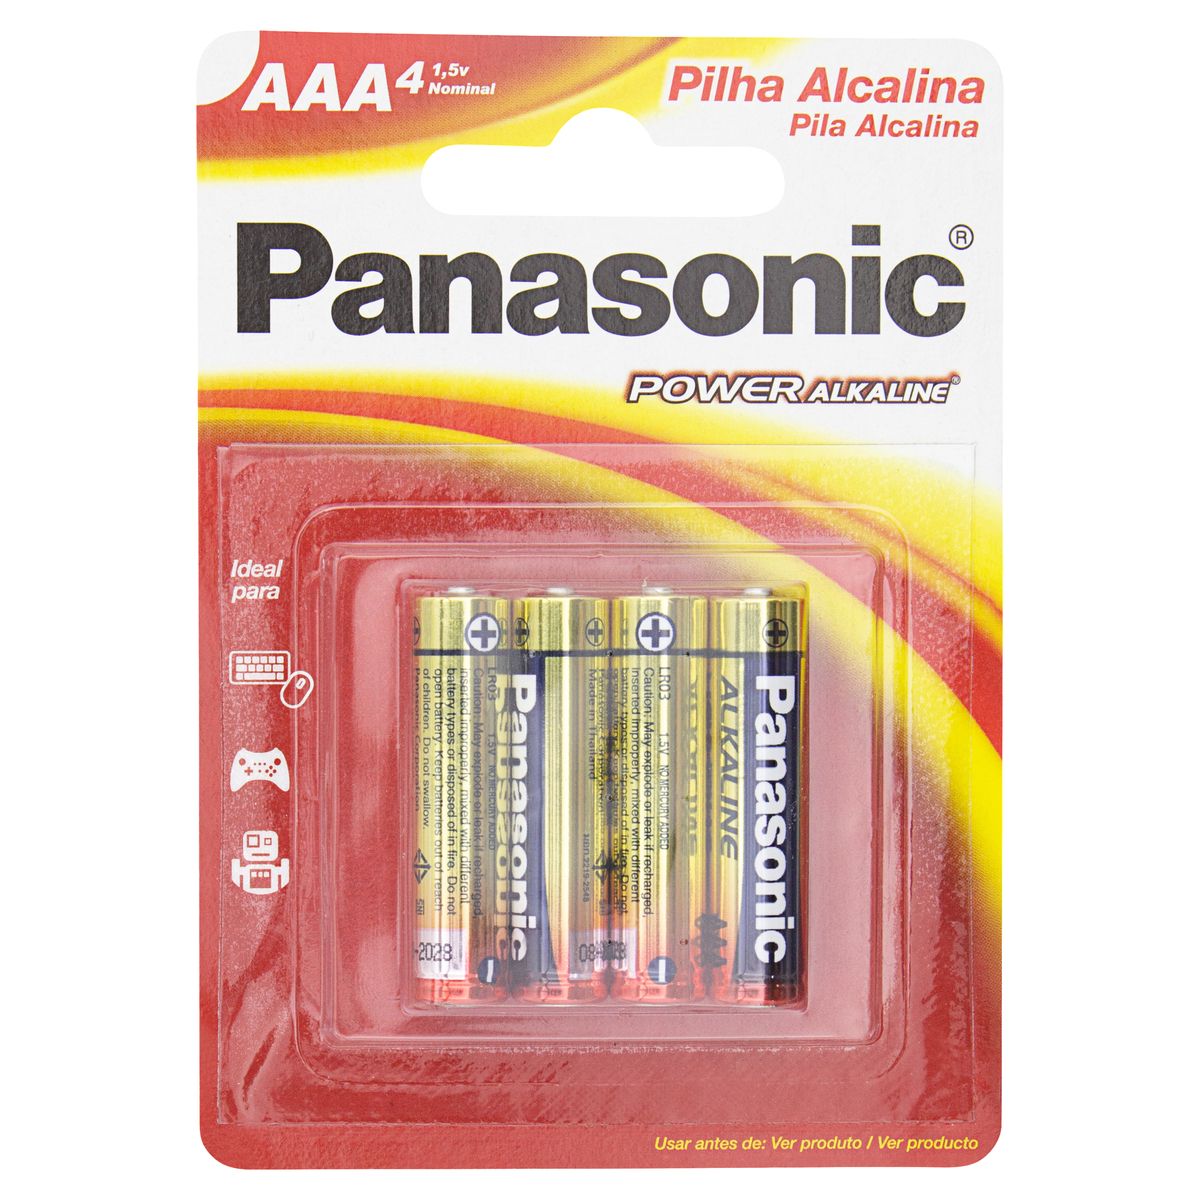 Pilha Alcalina AAA Panasonic Power Alkaline Palito 4 Unidades 1,5V